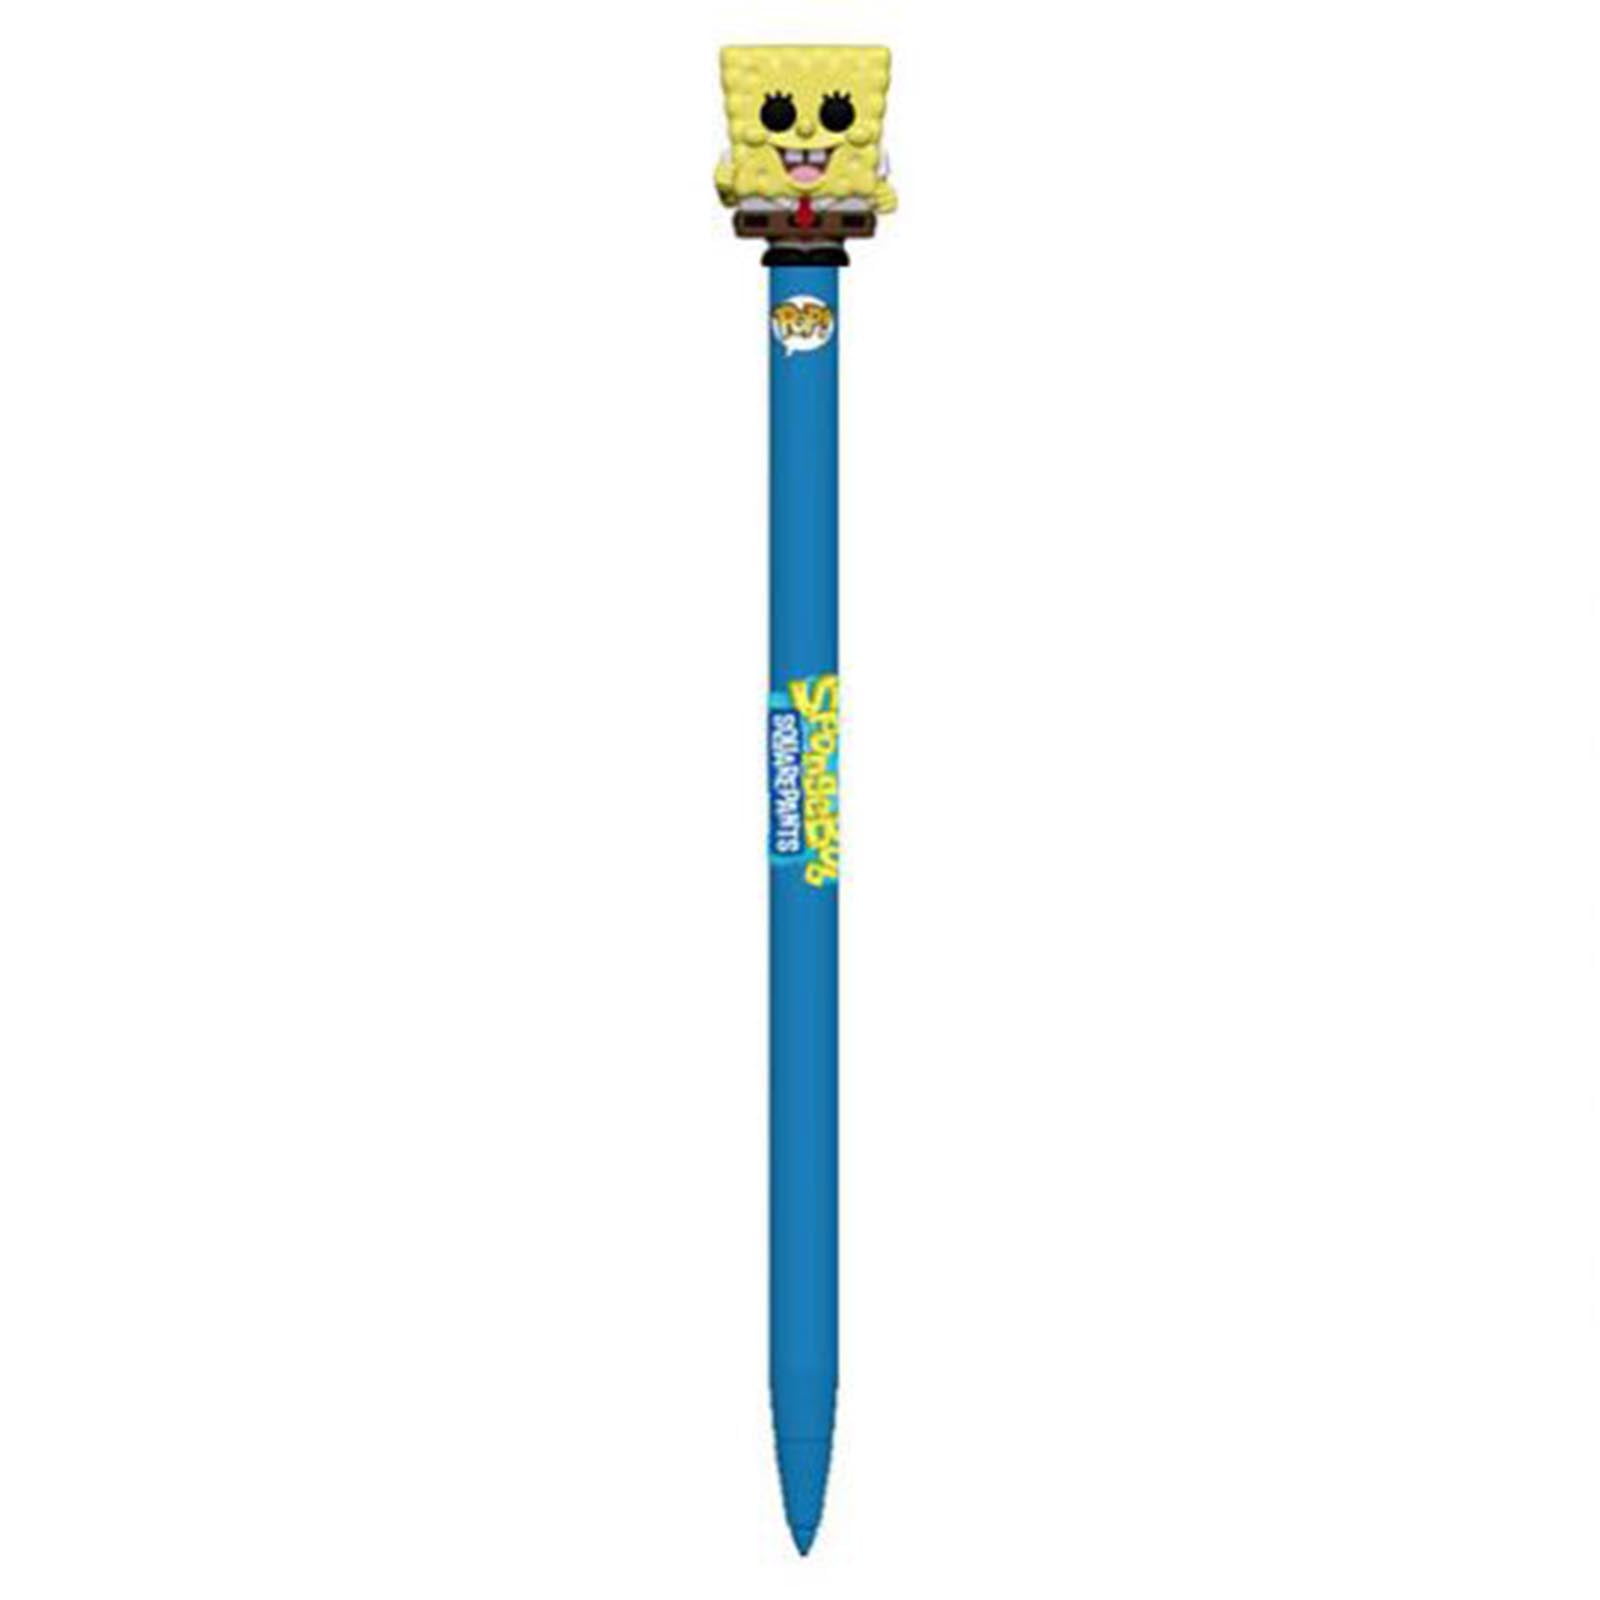 Spongebob pencils pack school supplies